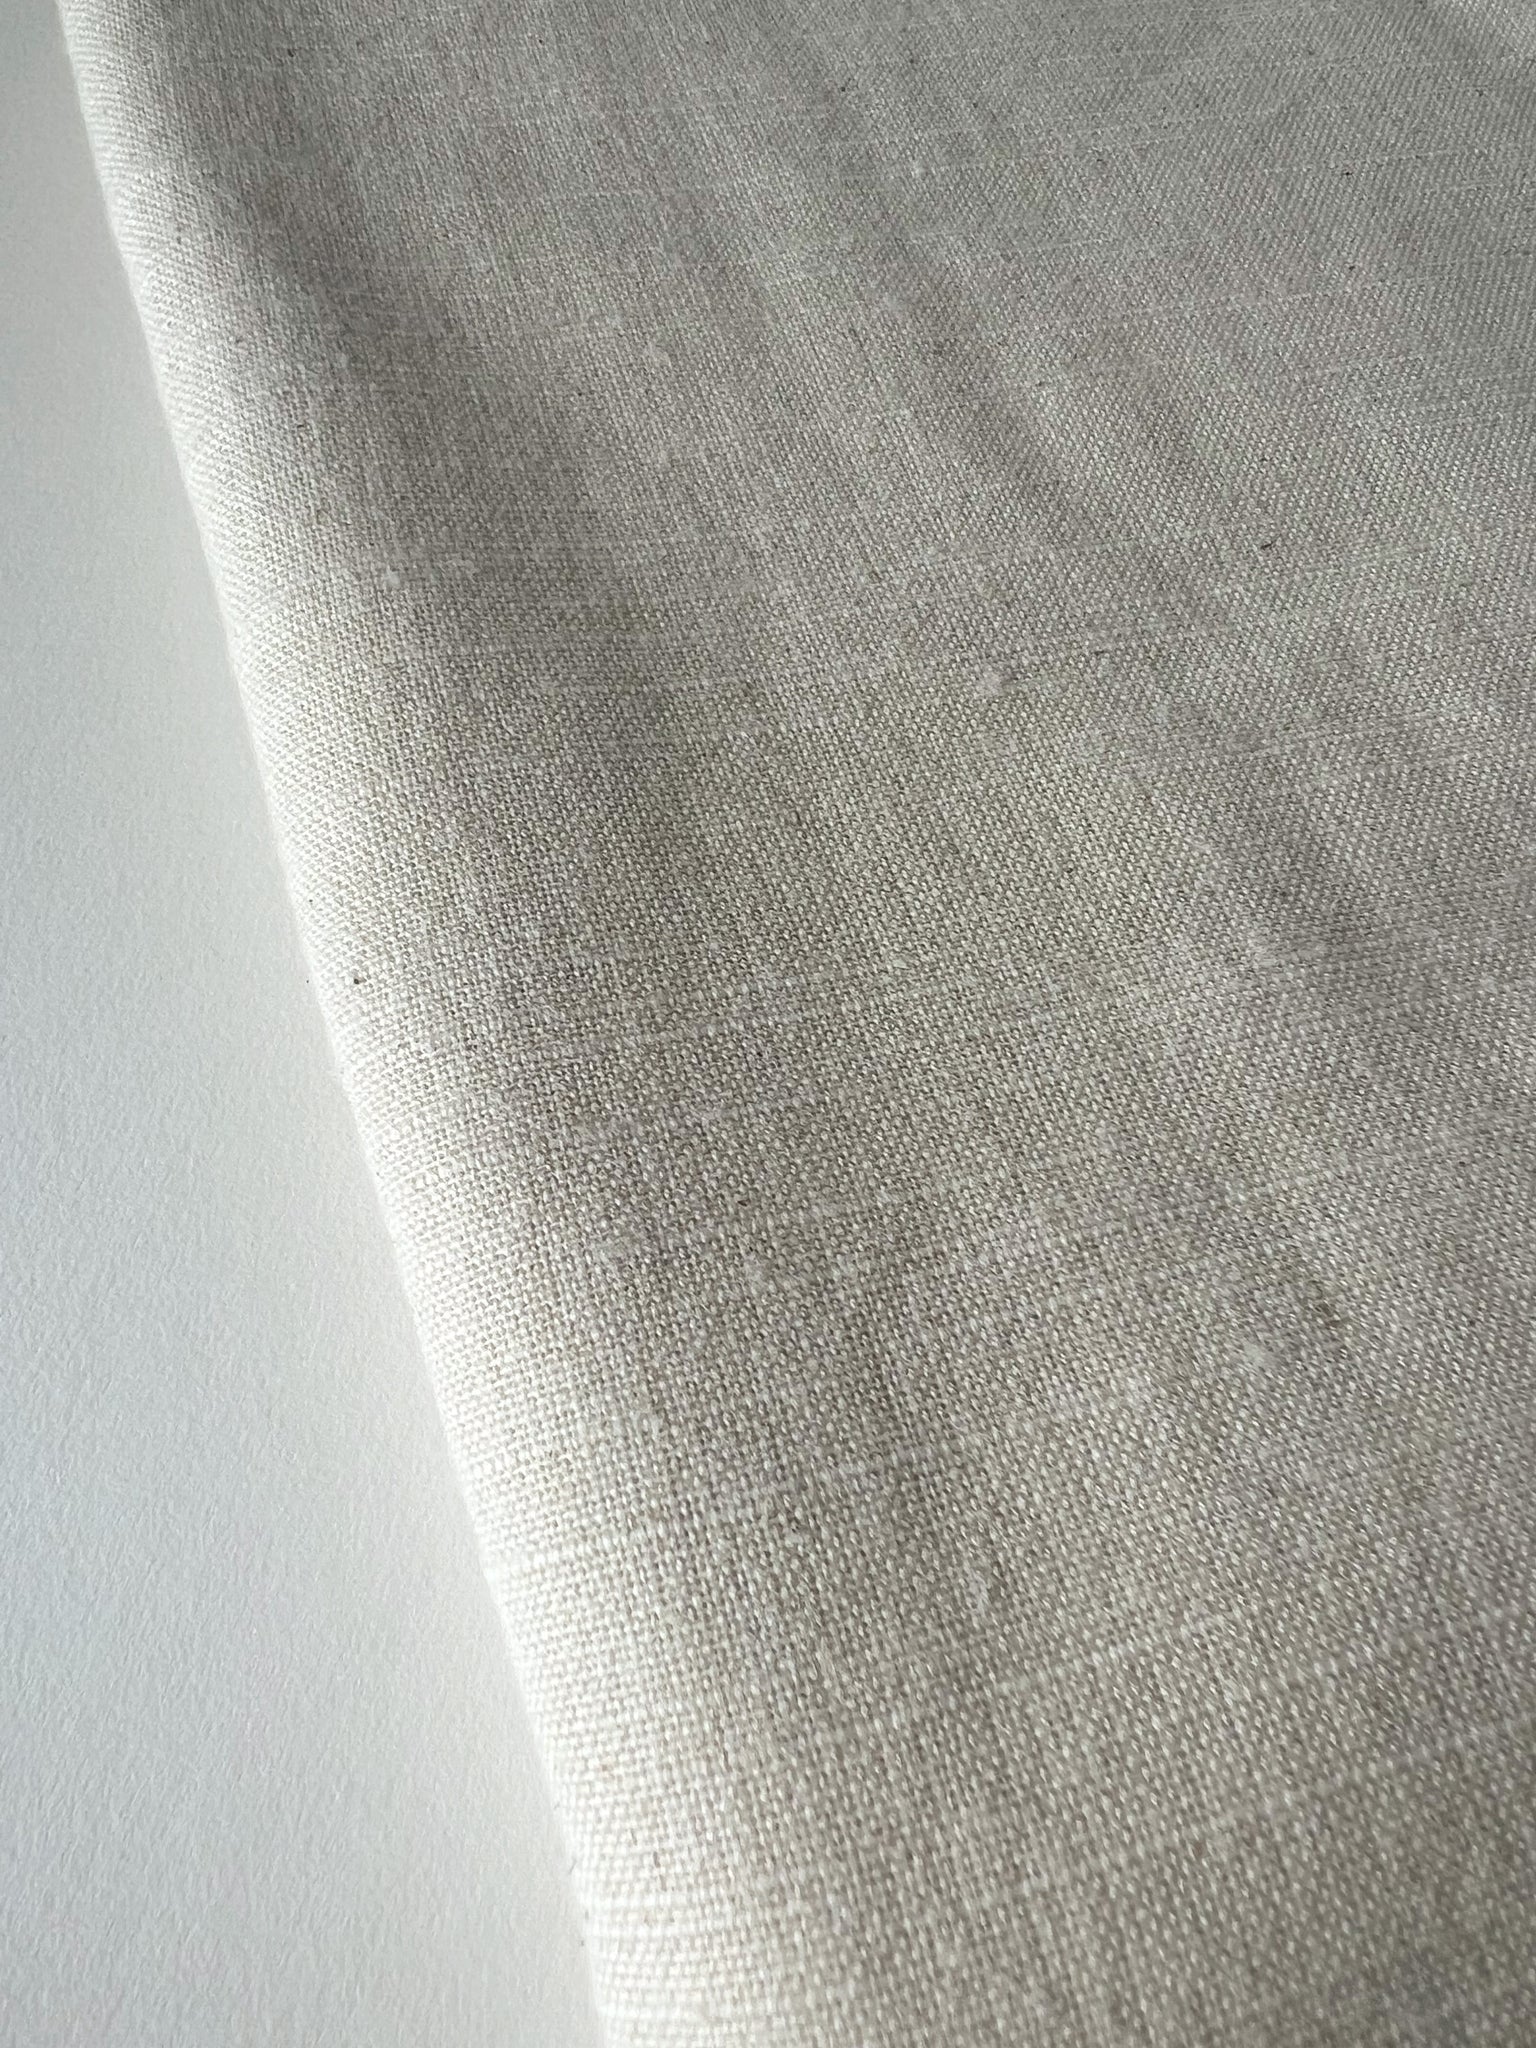 Handmade Natural Linen Tablecloth